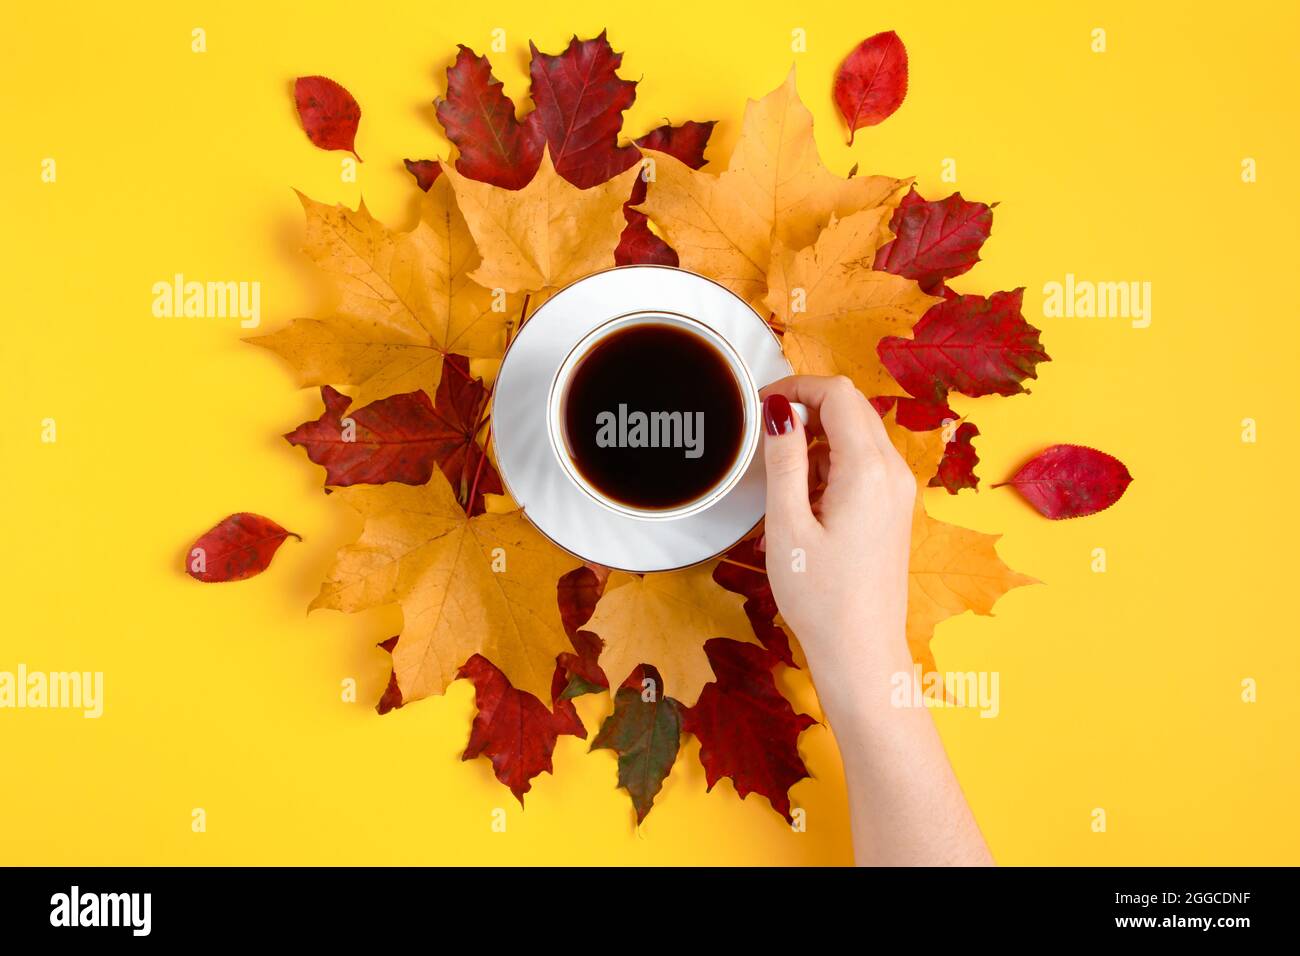 Main tenant une tasse de café fort. Boisson chaude d'automne et feuilles jaunes tombées sur un fond lumineux. Banque D'Images